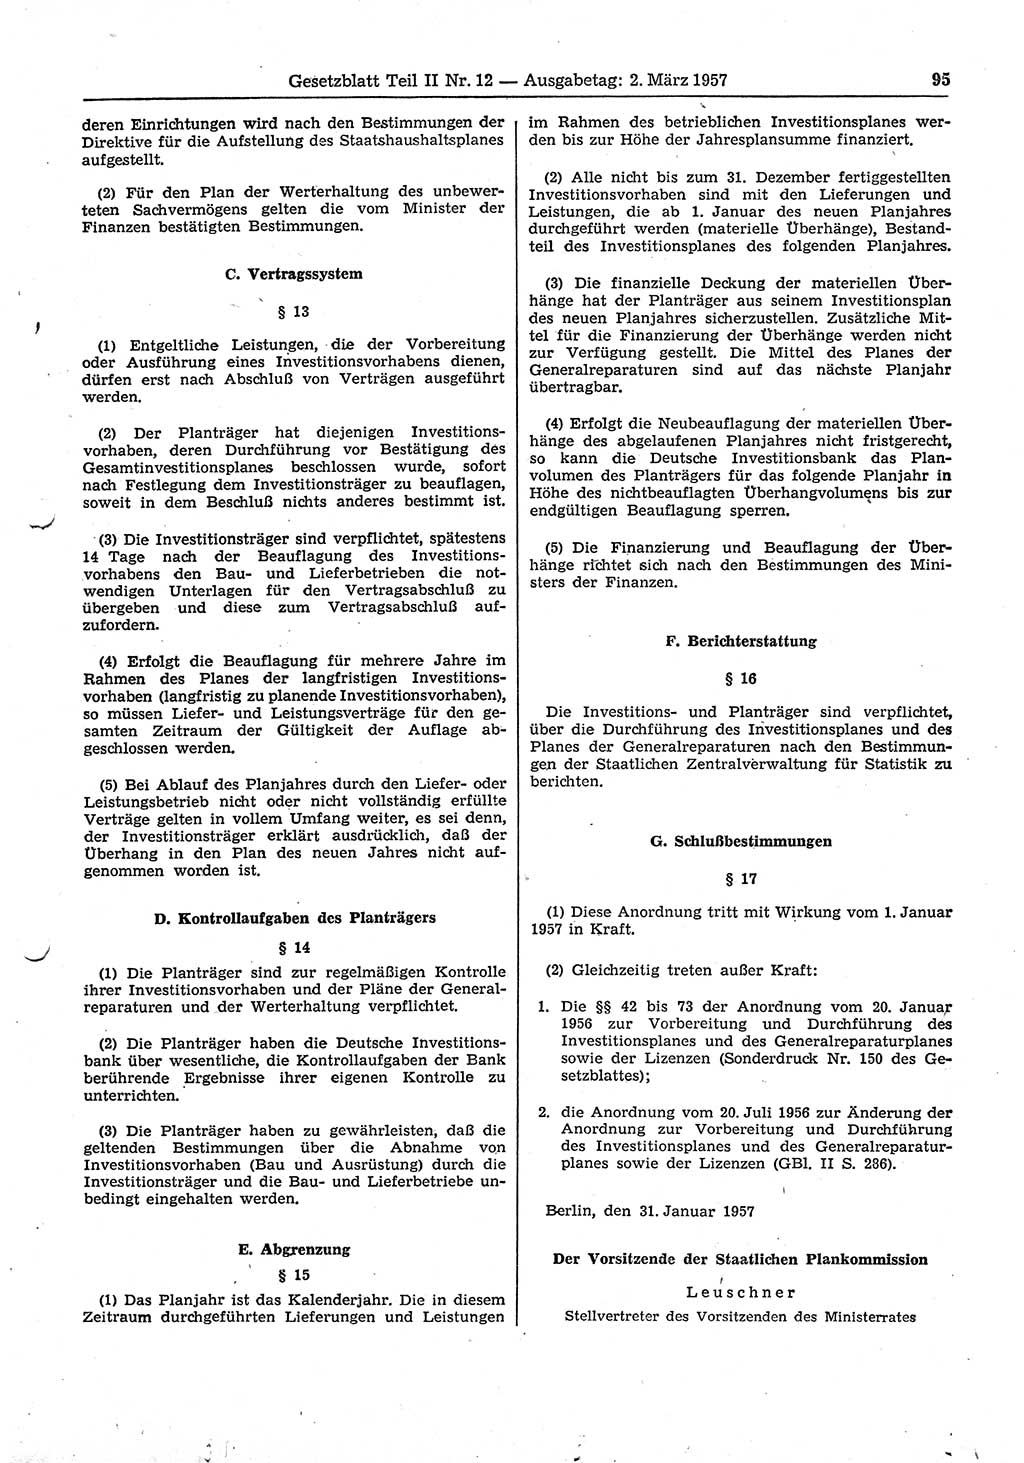 Gesetzblatt (GBl.) der Deutschen Demokratischen Republik (DDR) Teil ⅠⅠ 1957, Seite 95 (GBl. DDR ⅠⅠ 1957, S. 95)